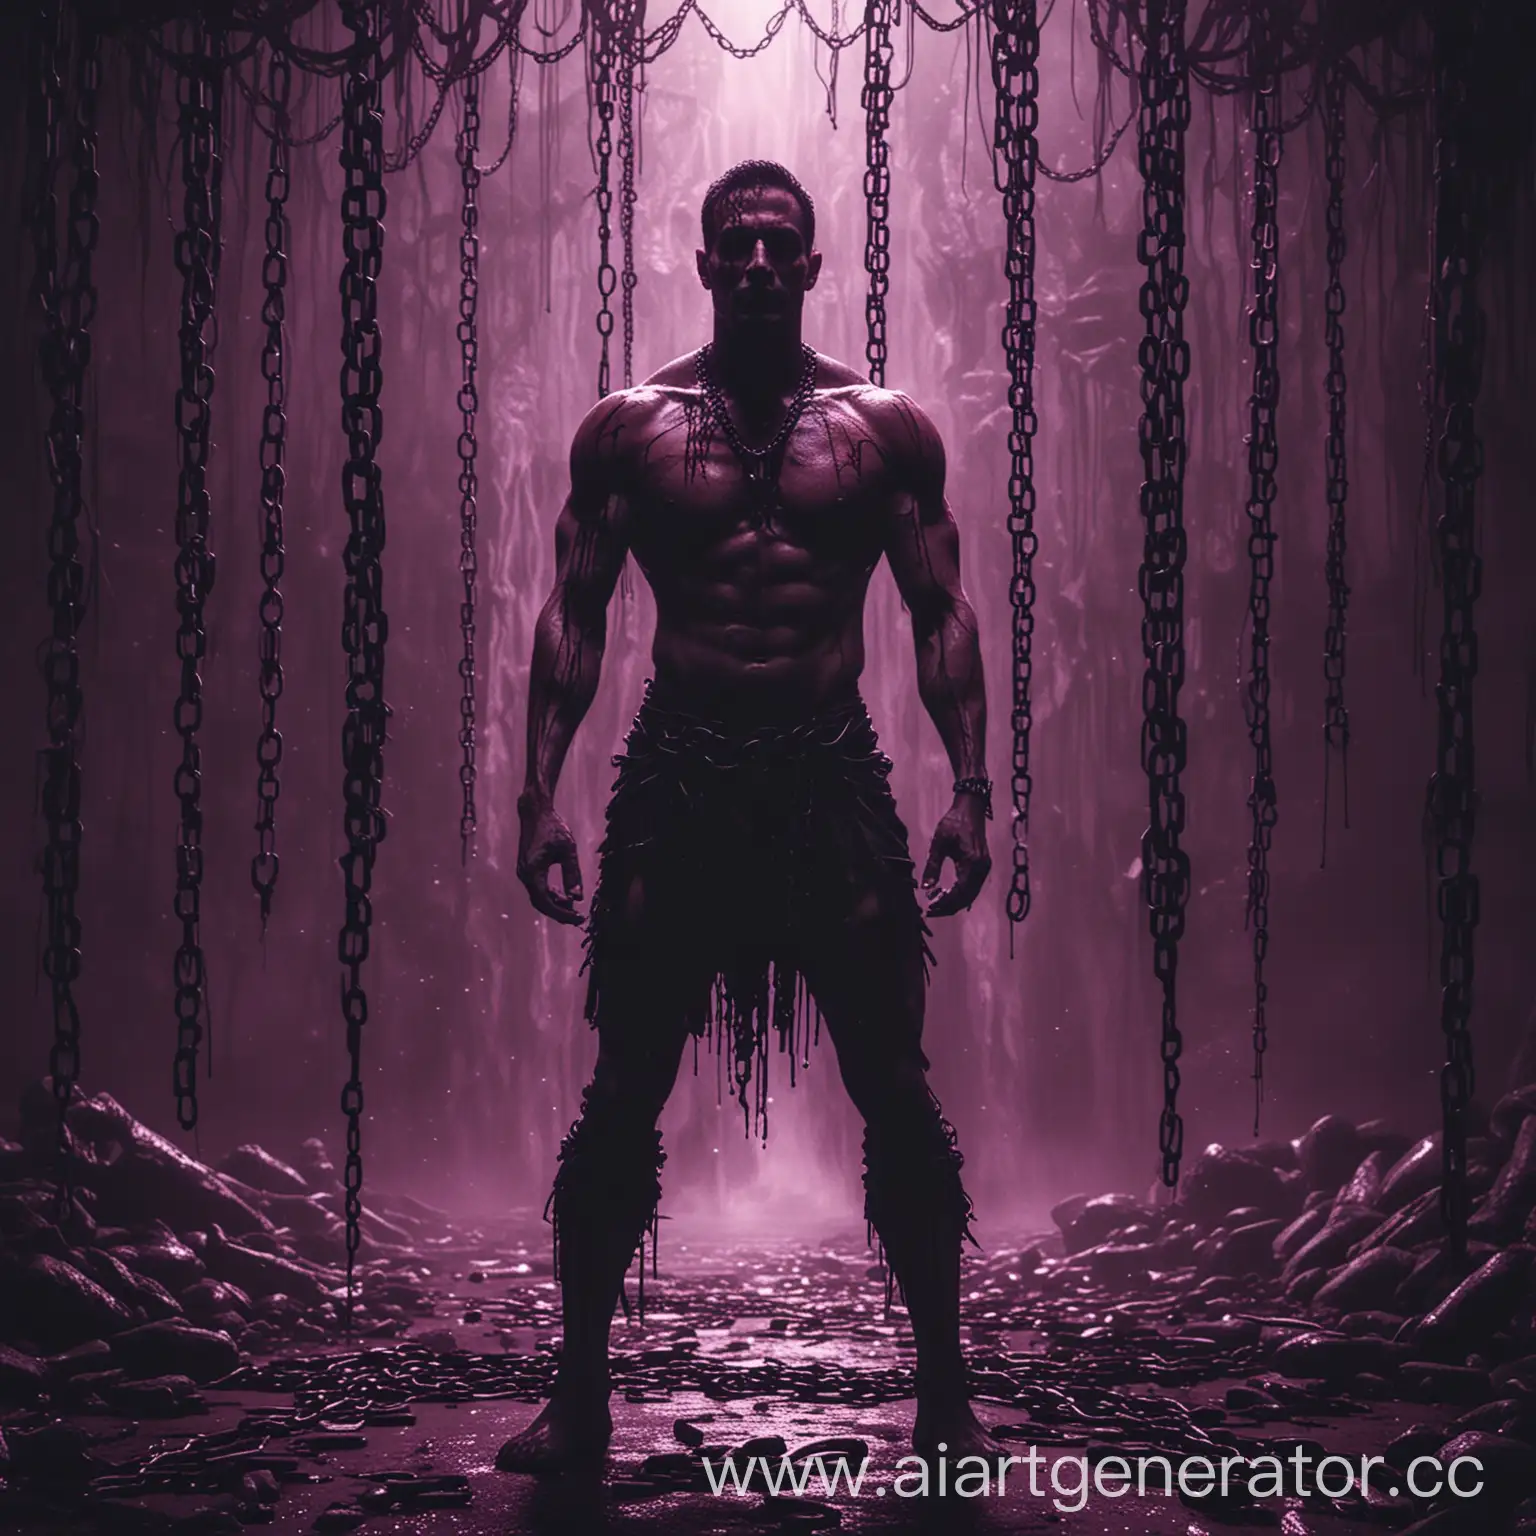 человек в тени, мускулистый страшный агресивный, фон красно фиолетово чёрный тон, водопад из крови и много цепей к которым привязаны скелеты